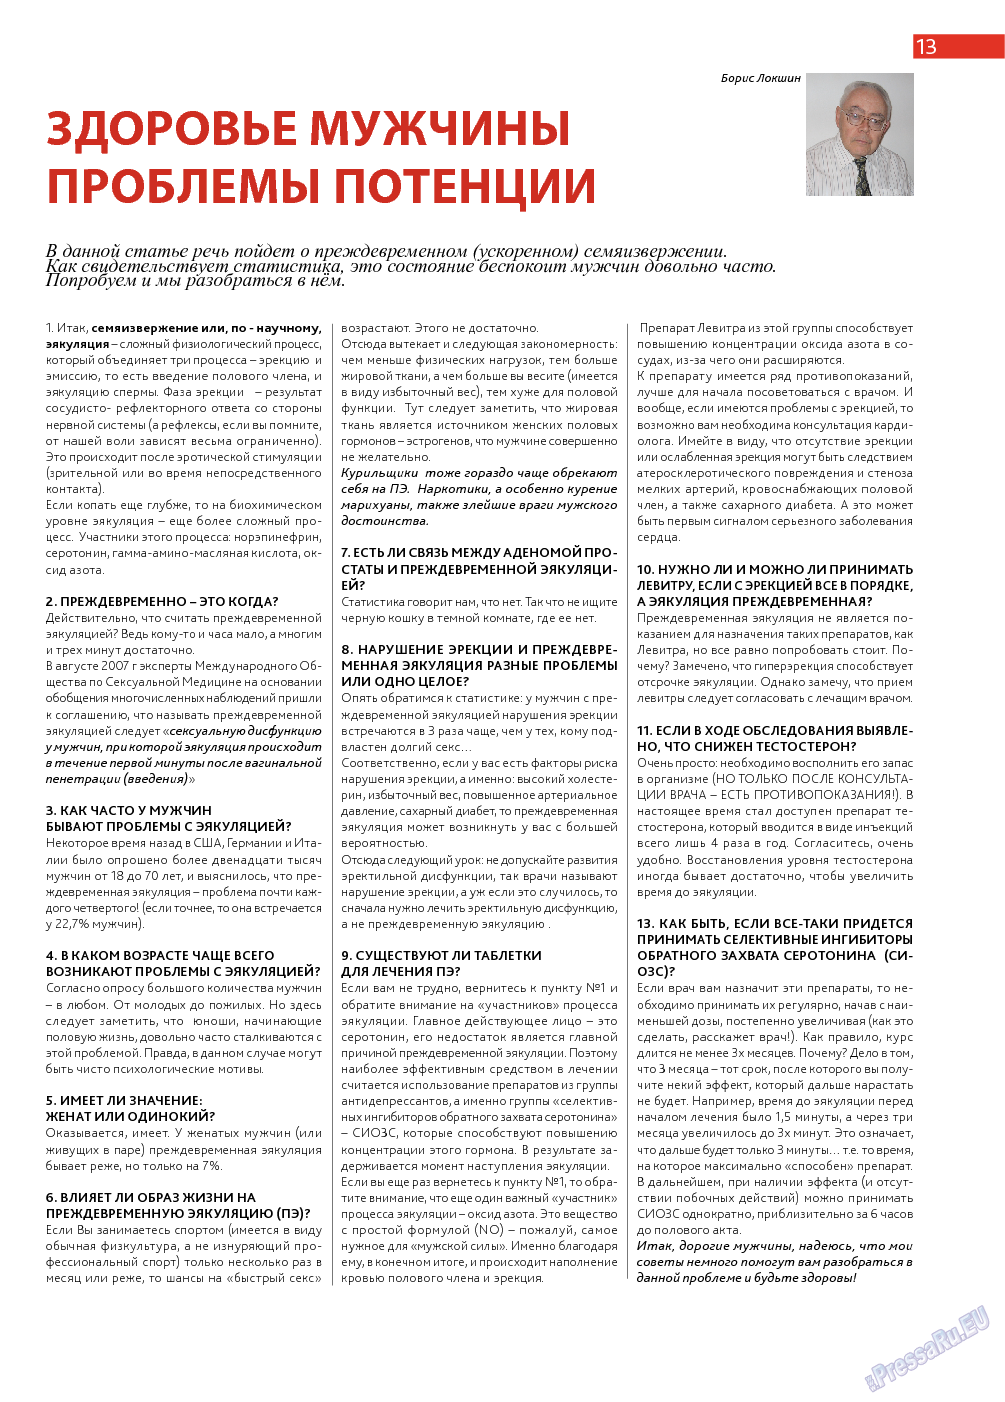 Афиша Augsburg (журнал). 2014 год, номер 1, стр. 13